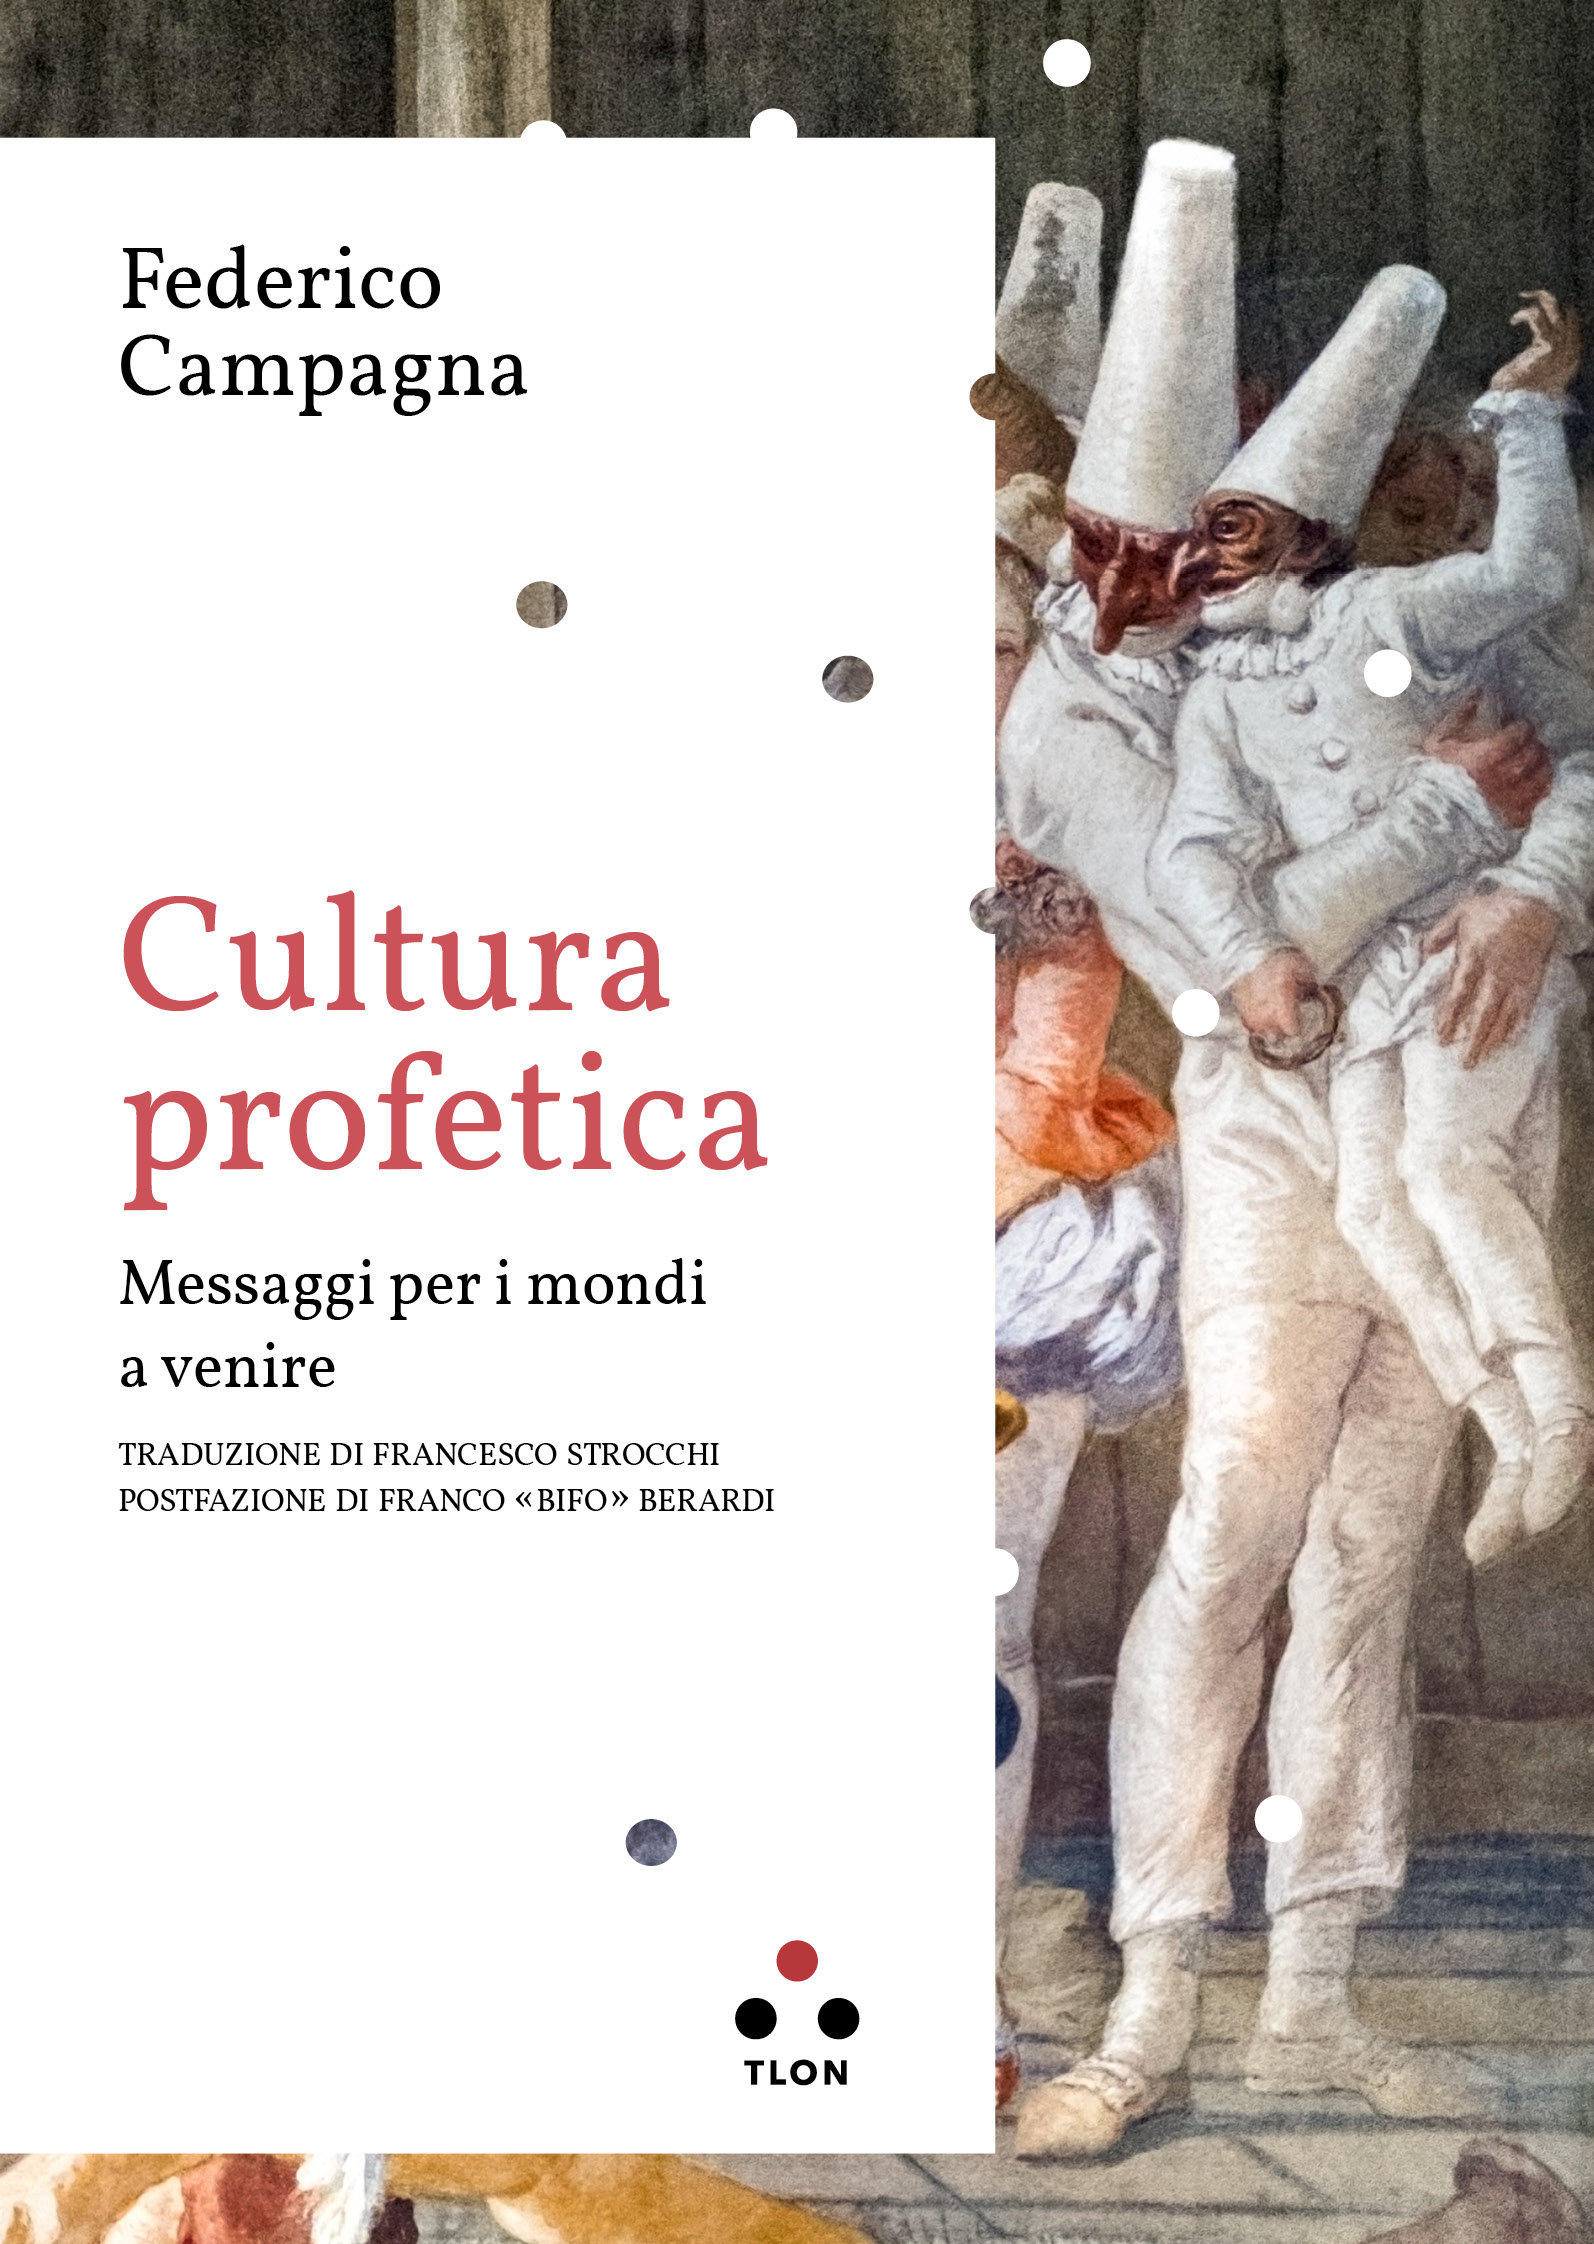 Federico Campagna, Cultura profetica, Tlon, 2023